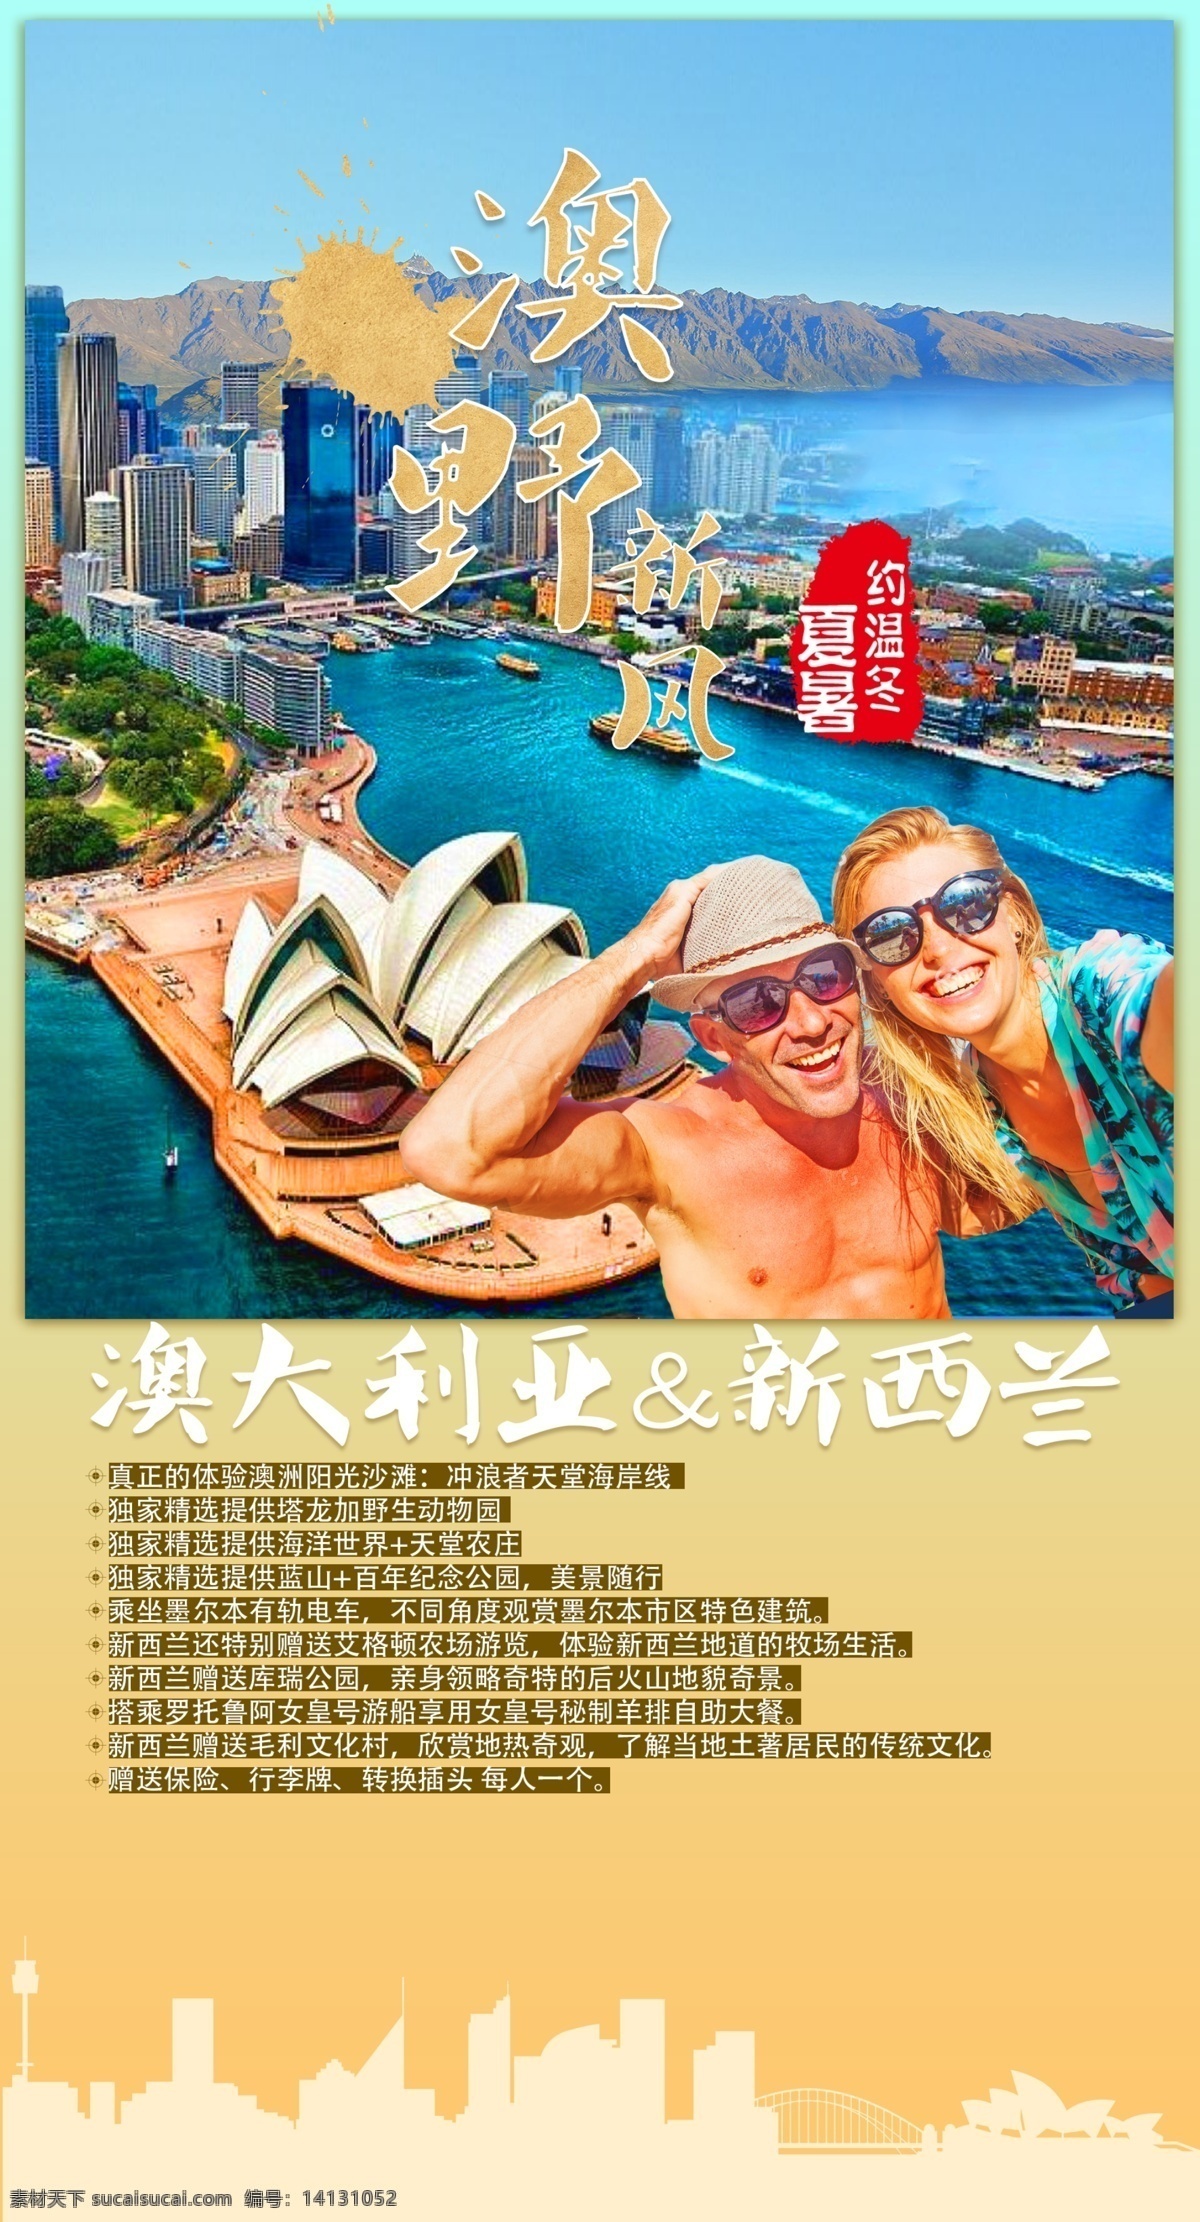 澳新 天 海报 澳新12天 旅游海报 关注后下载